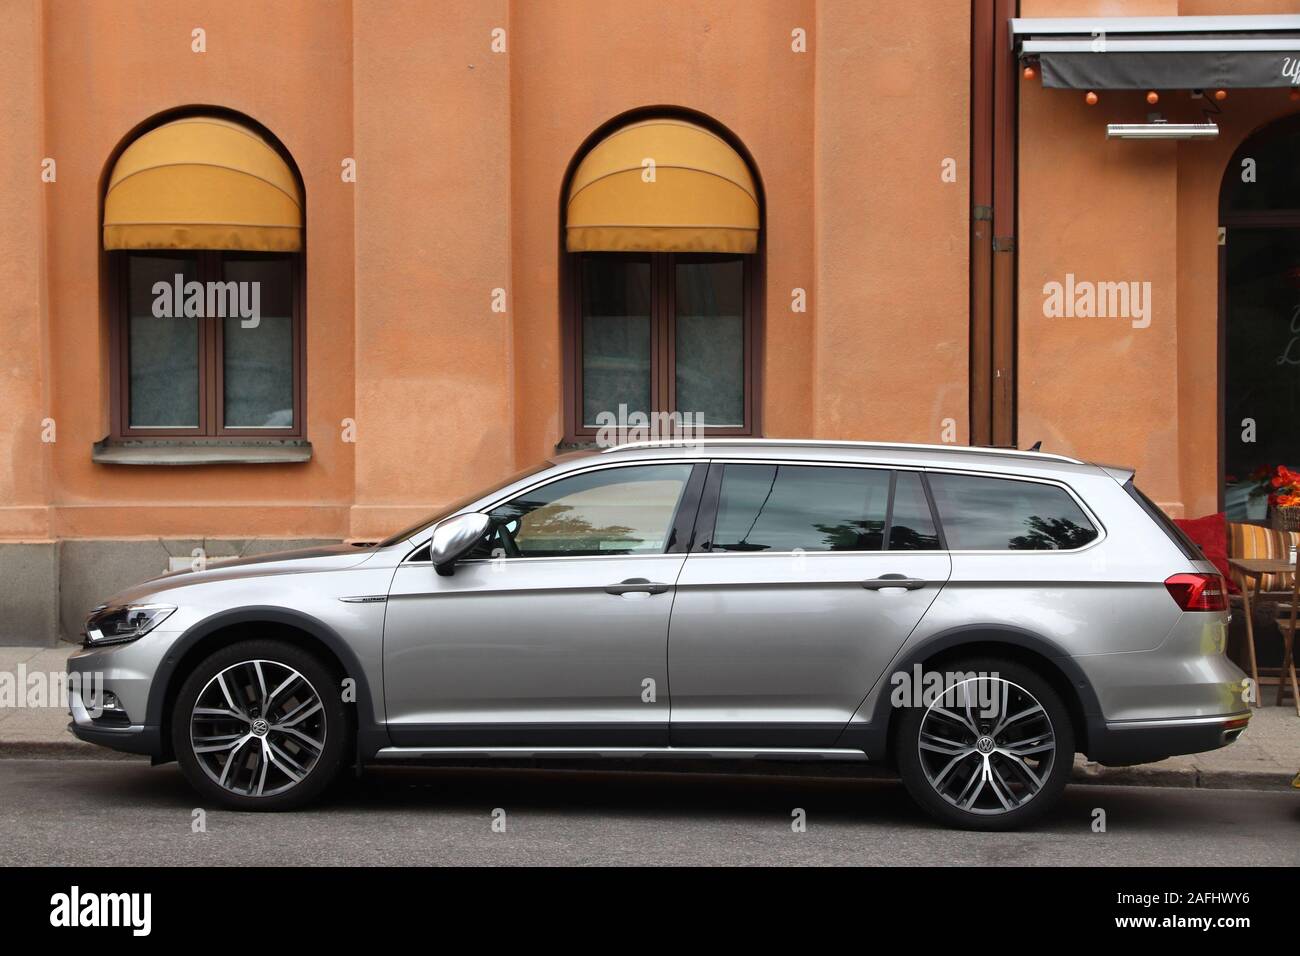 STOCKHOLM, Schweden - 24. AUGUST 2018: Silber VW Passat Kombi Alltrack Familie Auto in Stockholm, Schweden geparkt. Es gibt 4,8 Millionen Pkw c Stockfoto